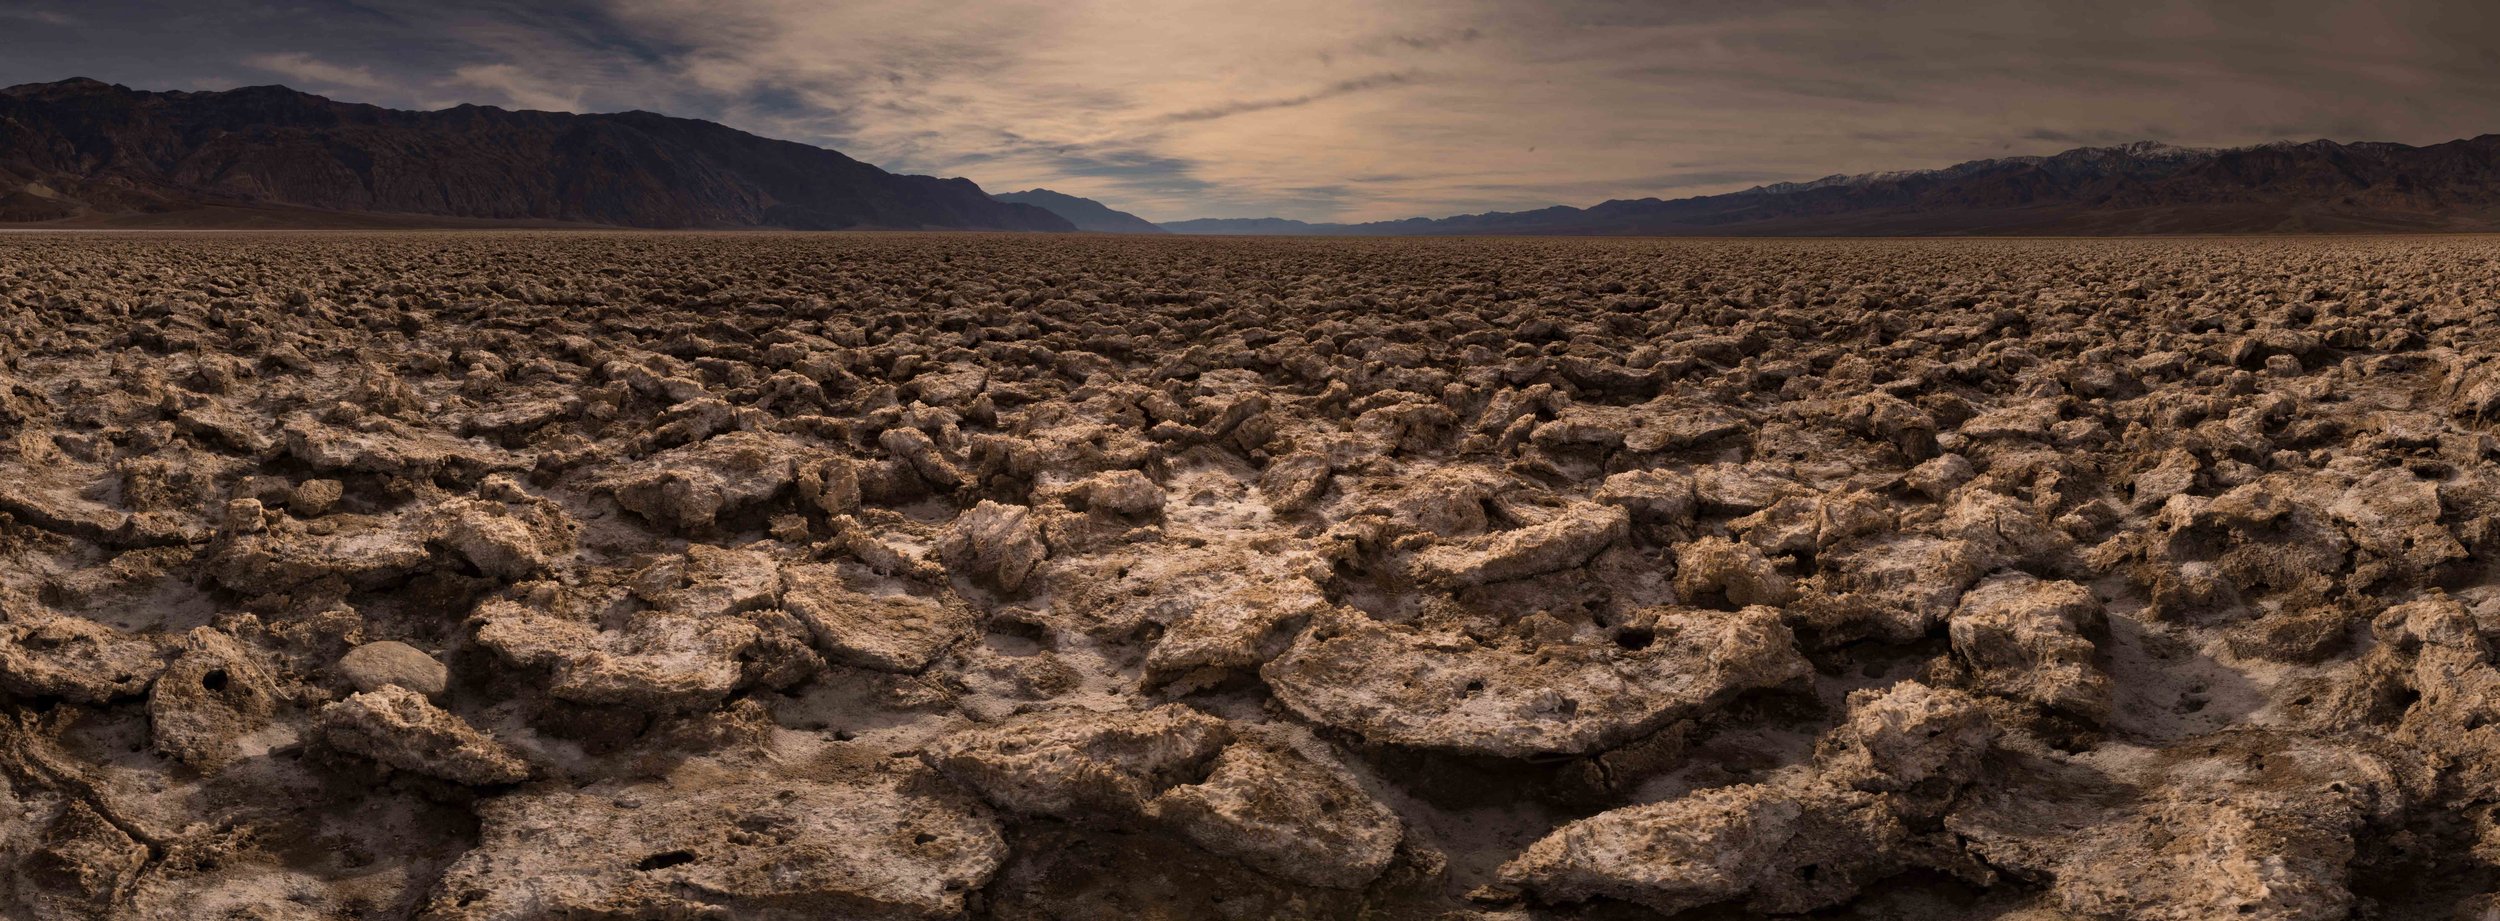 Death Valley 4.jpg